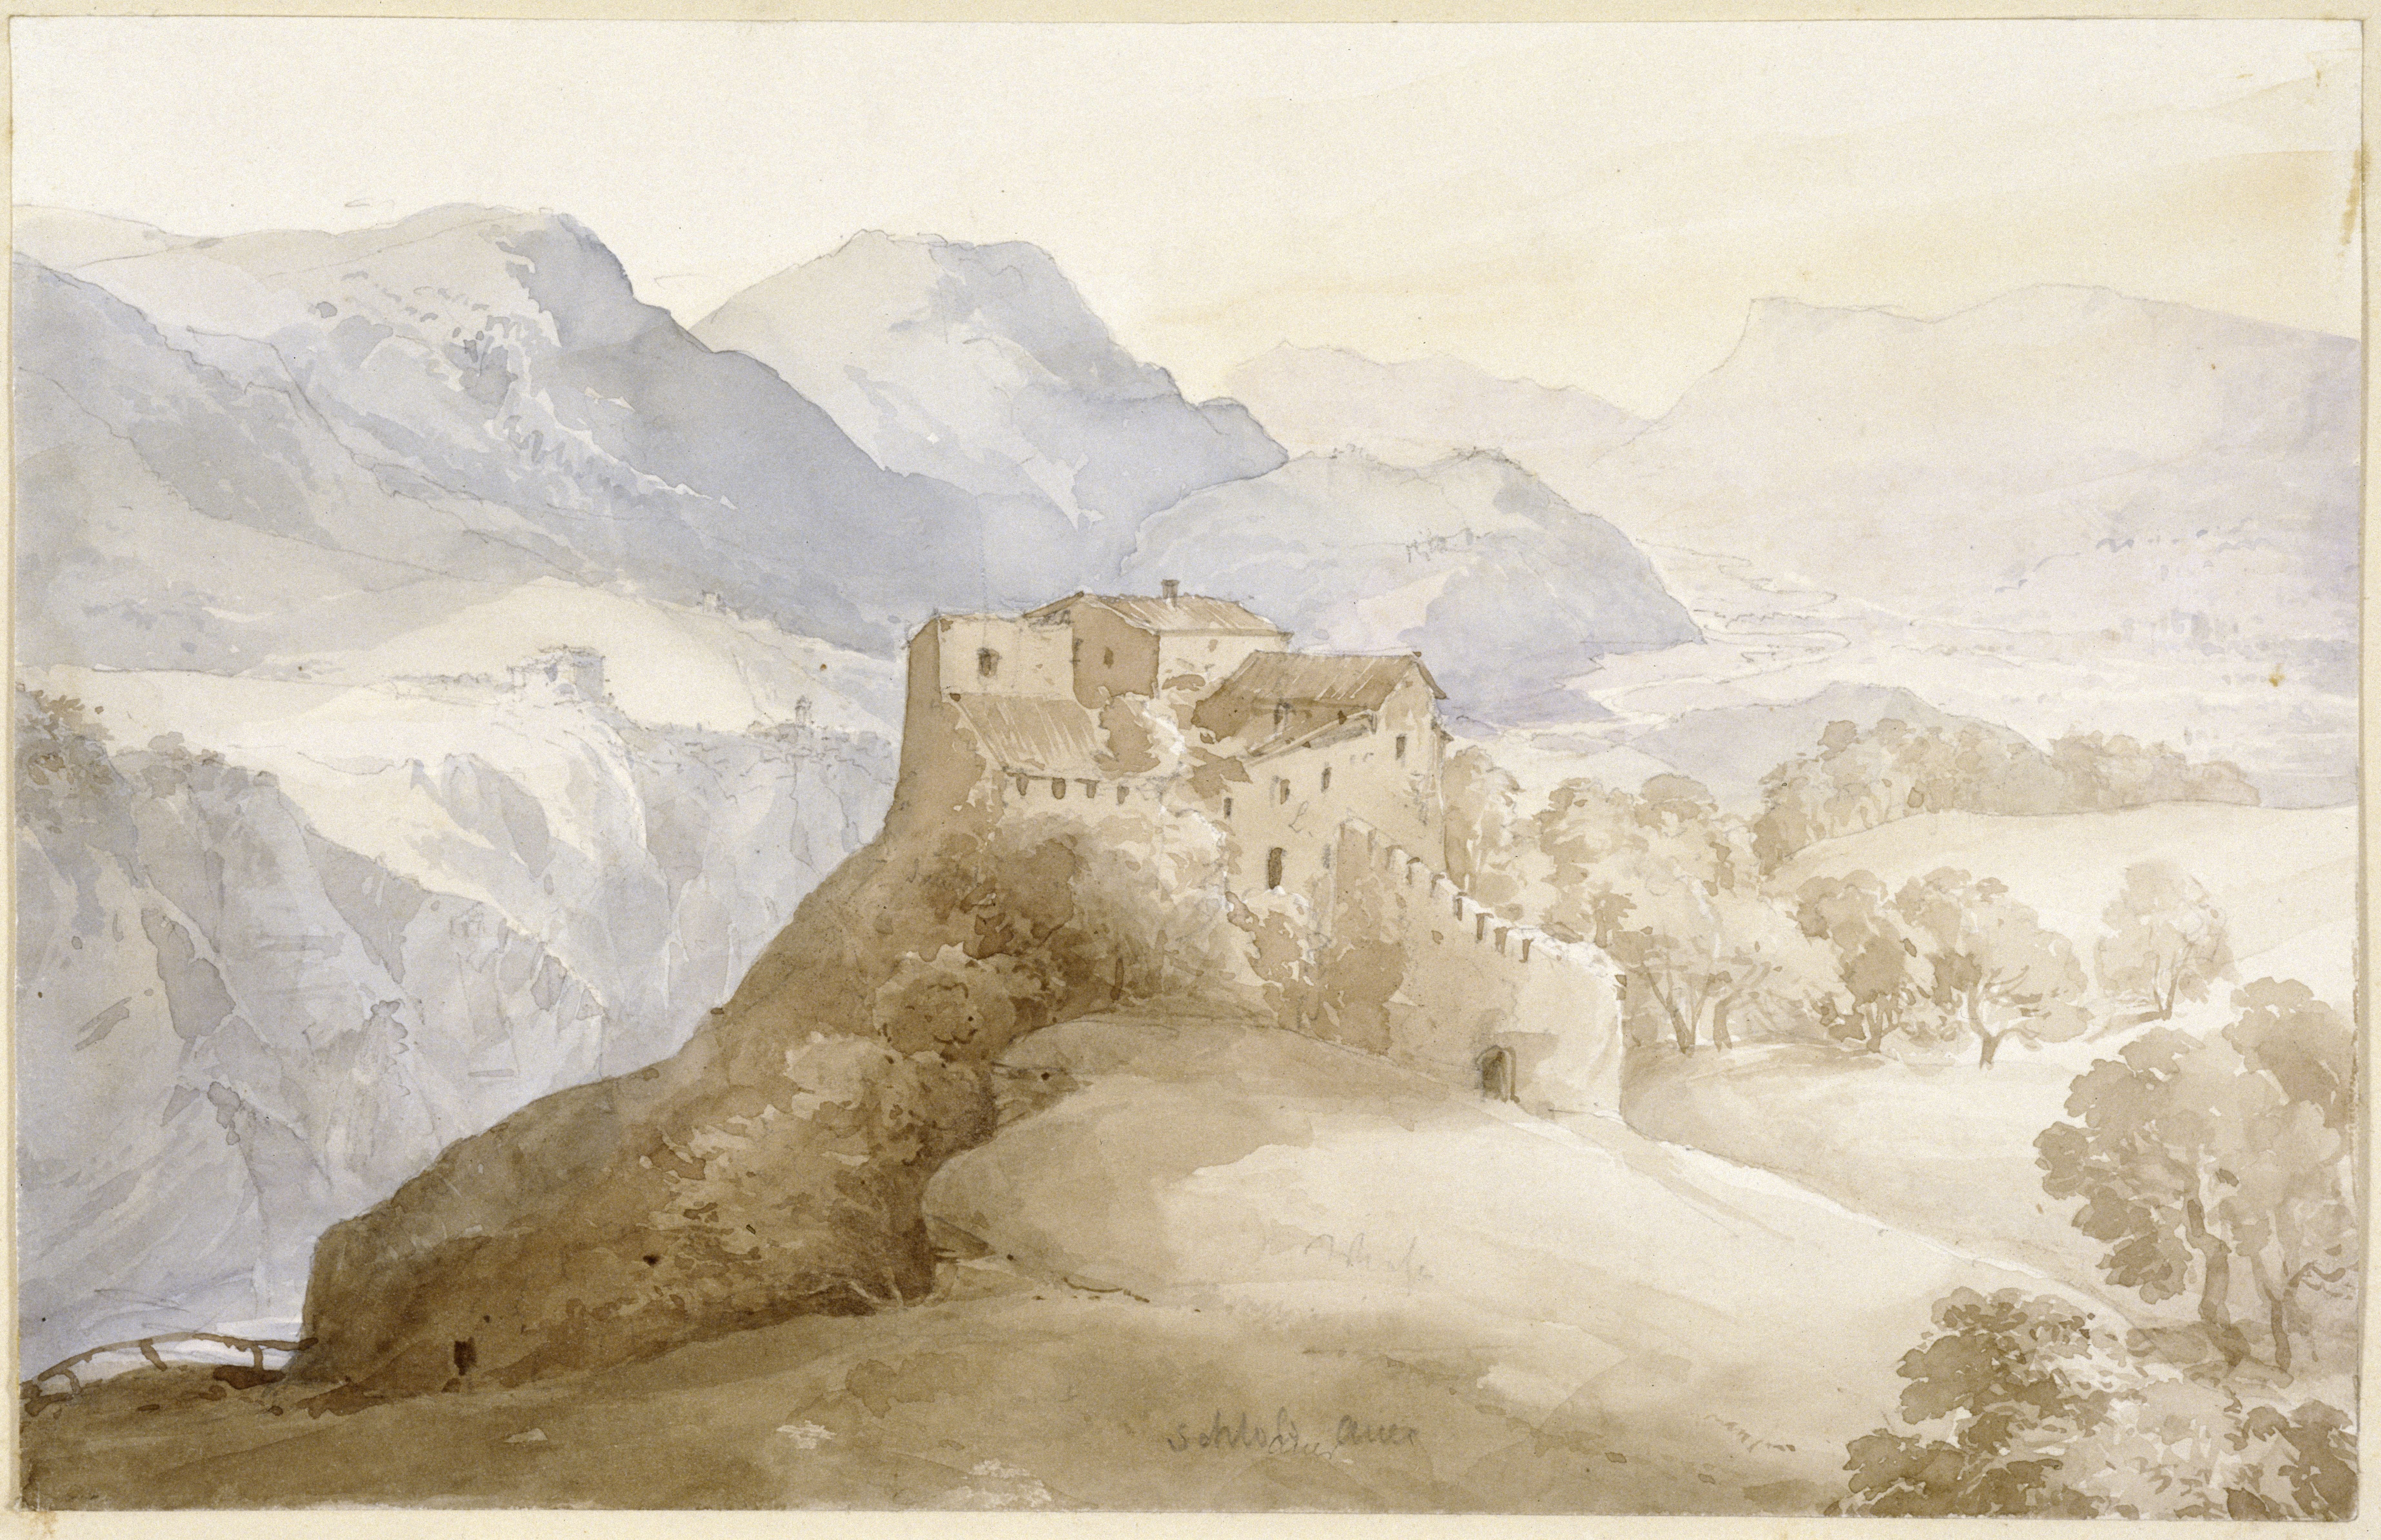 Stüler, Friedrich August: Schloss Auer in Dorf Tirol, 1858, SPSG, GK II (5) 3346. (Stiftung Preußische Schlösser und Gärten Berlin-Brandenburg CC BY-NC-SA)